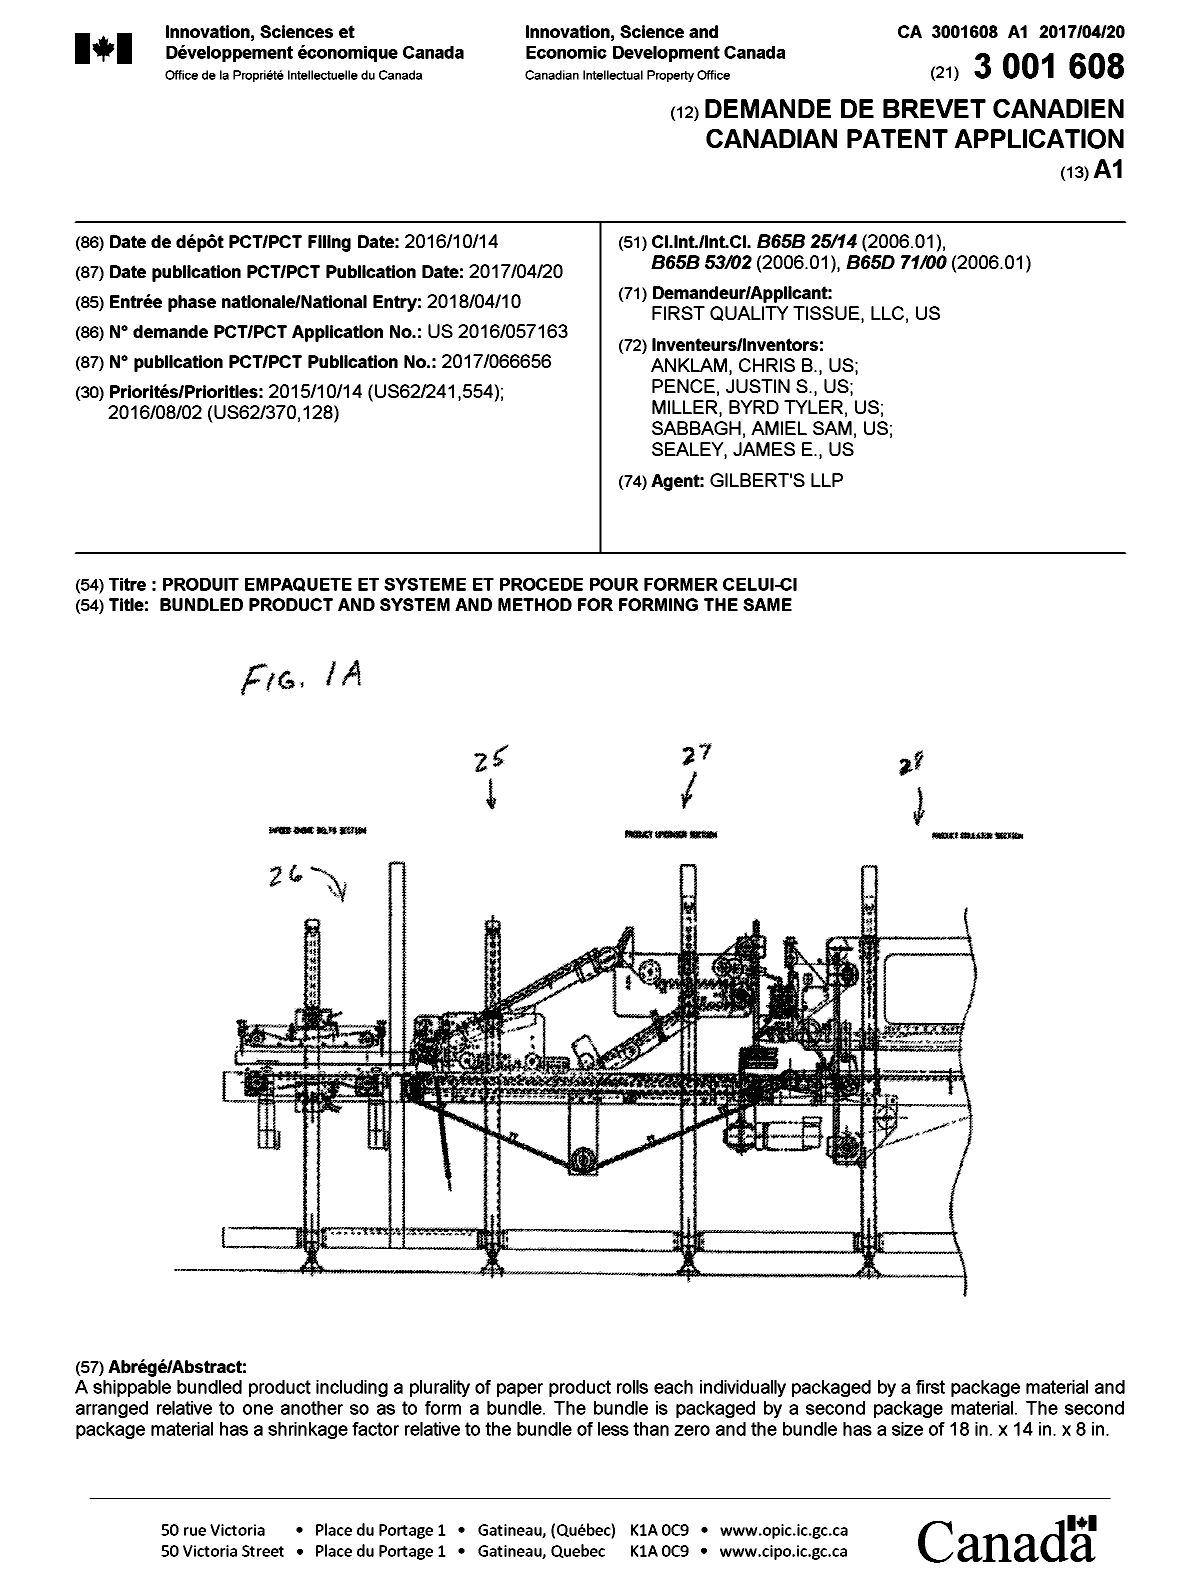 Document de brevet canadien 3001608. Page couverture 20180509. Image 1 de 1